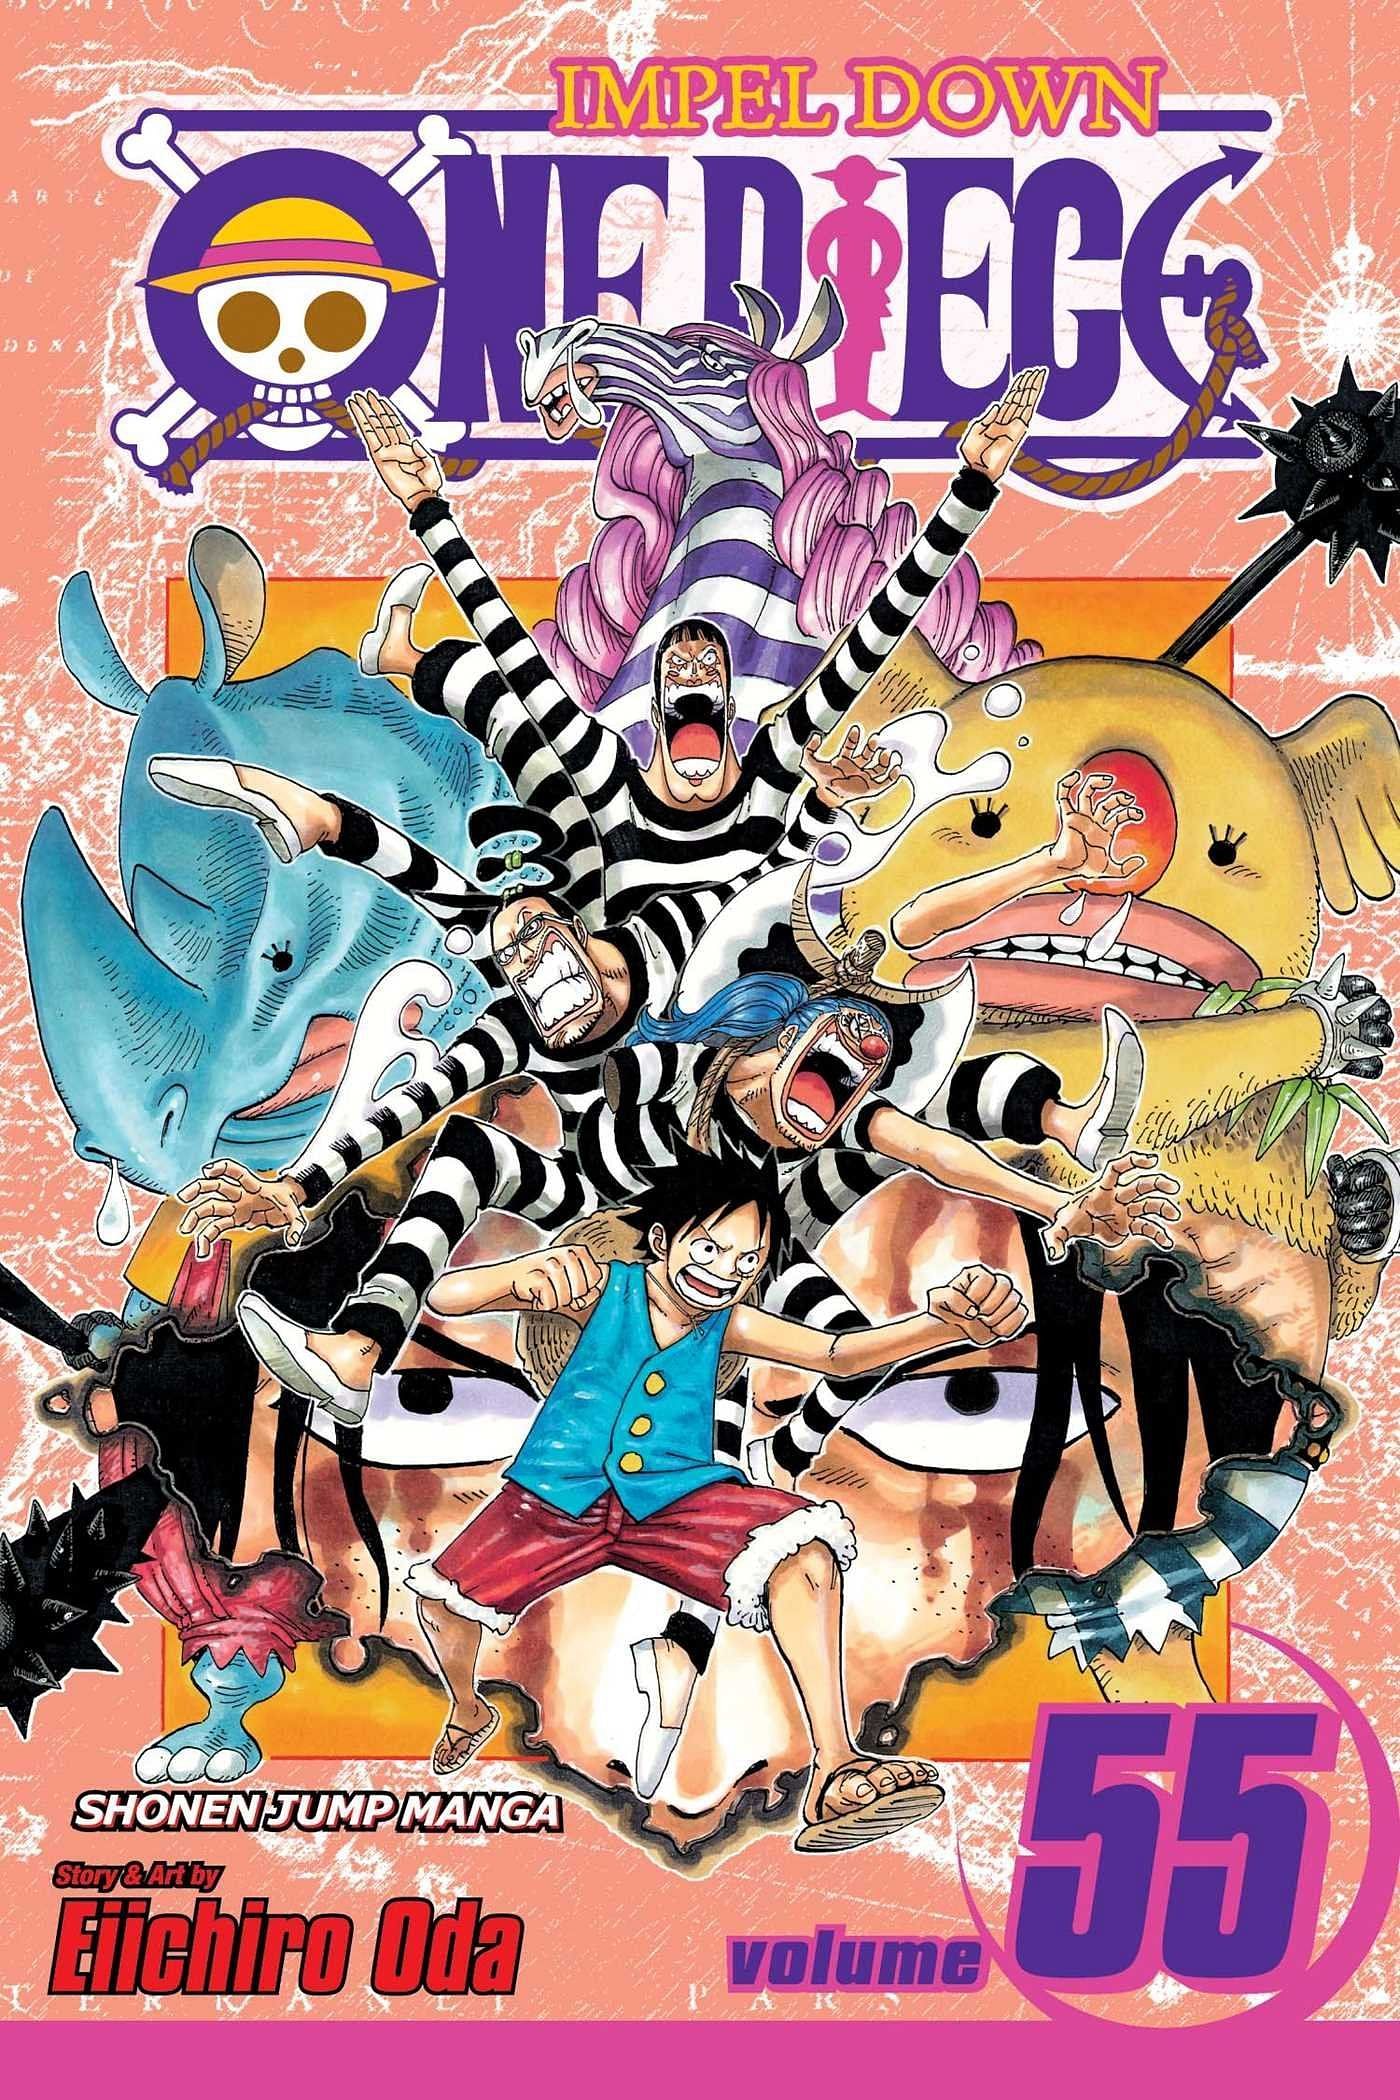 The cover art for One Piece Volume 55 (Image via Shueisha)